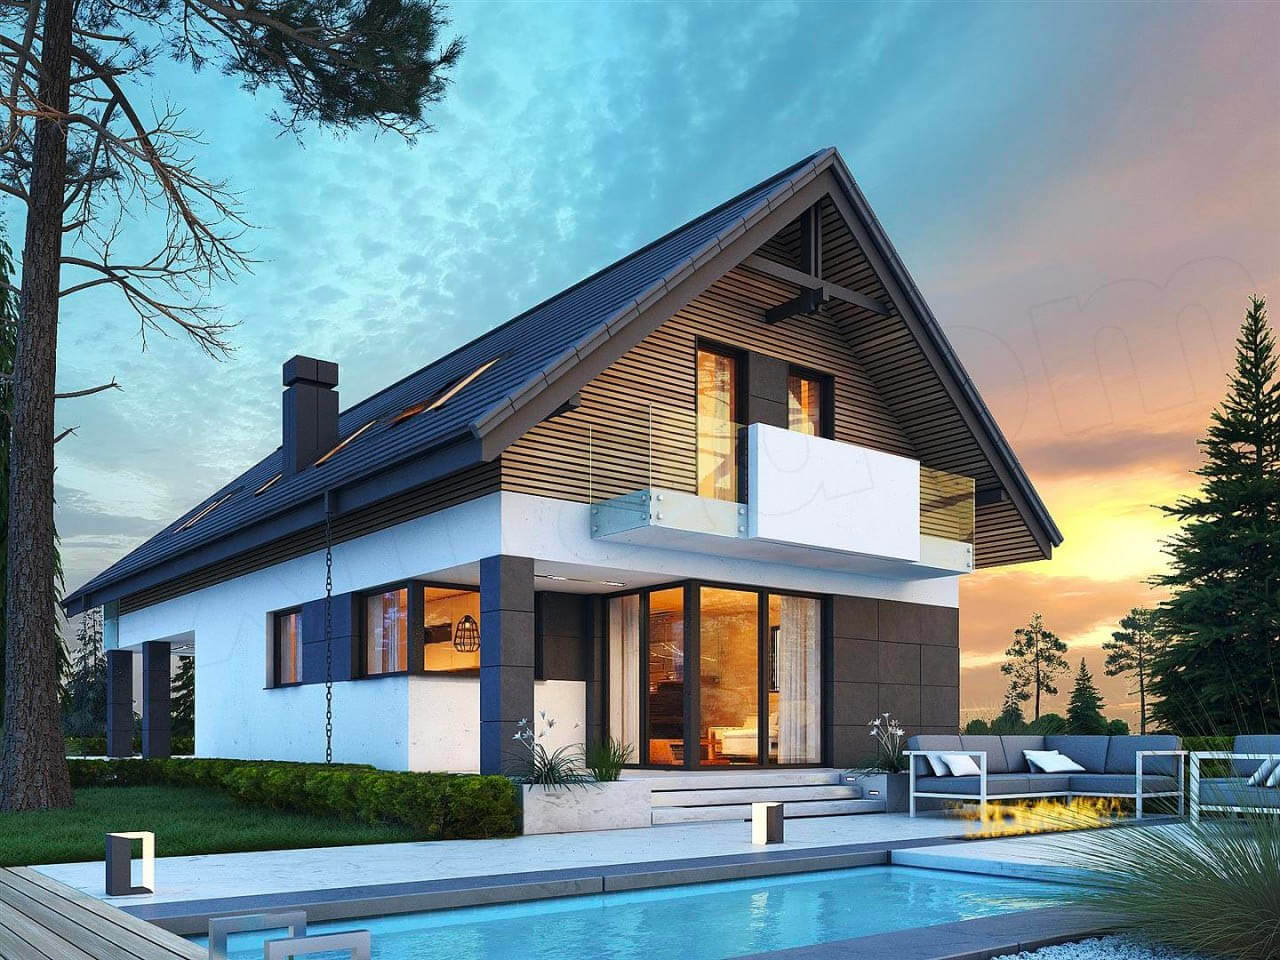 Пример стильного и красивого дома — превратить такой из мечты в реальность поможет компания 101 Group!